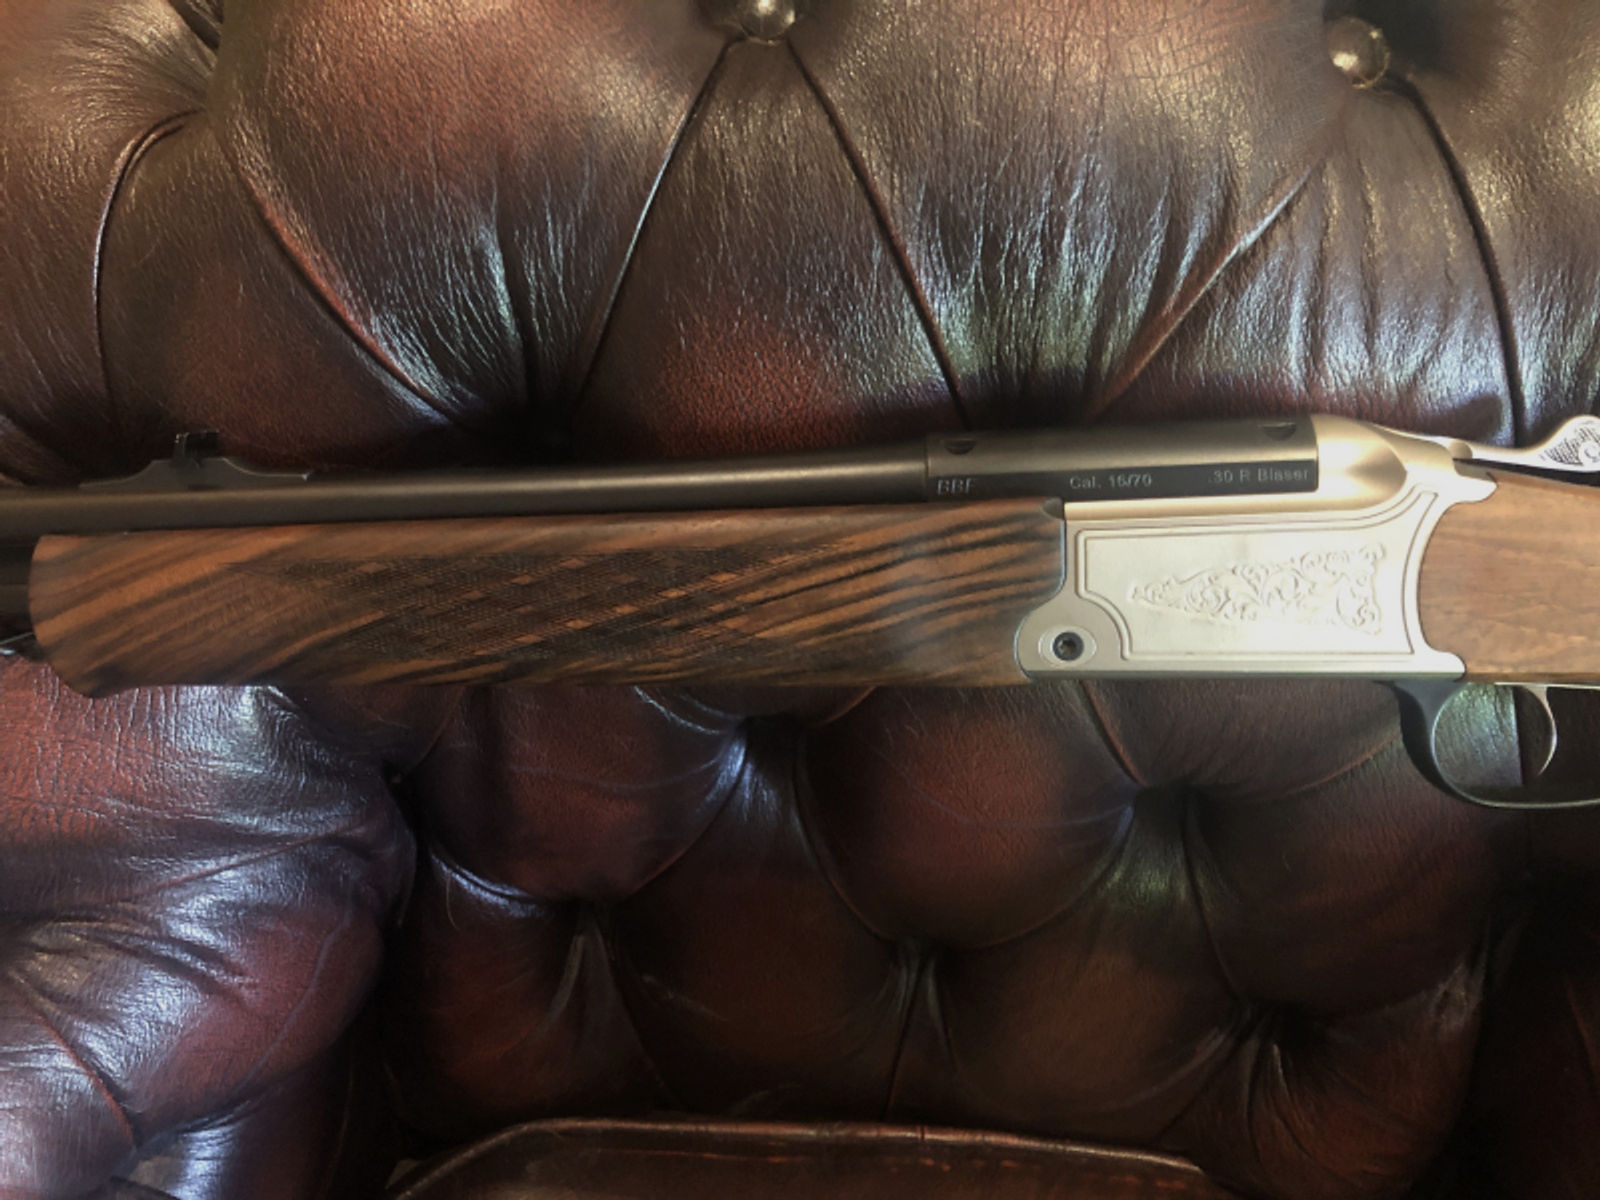 Blaser Sauer 97 BBF 30R Blaser, 16/70 mit Einstecklauf 5,6x50R Magnum